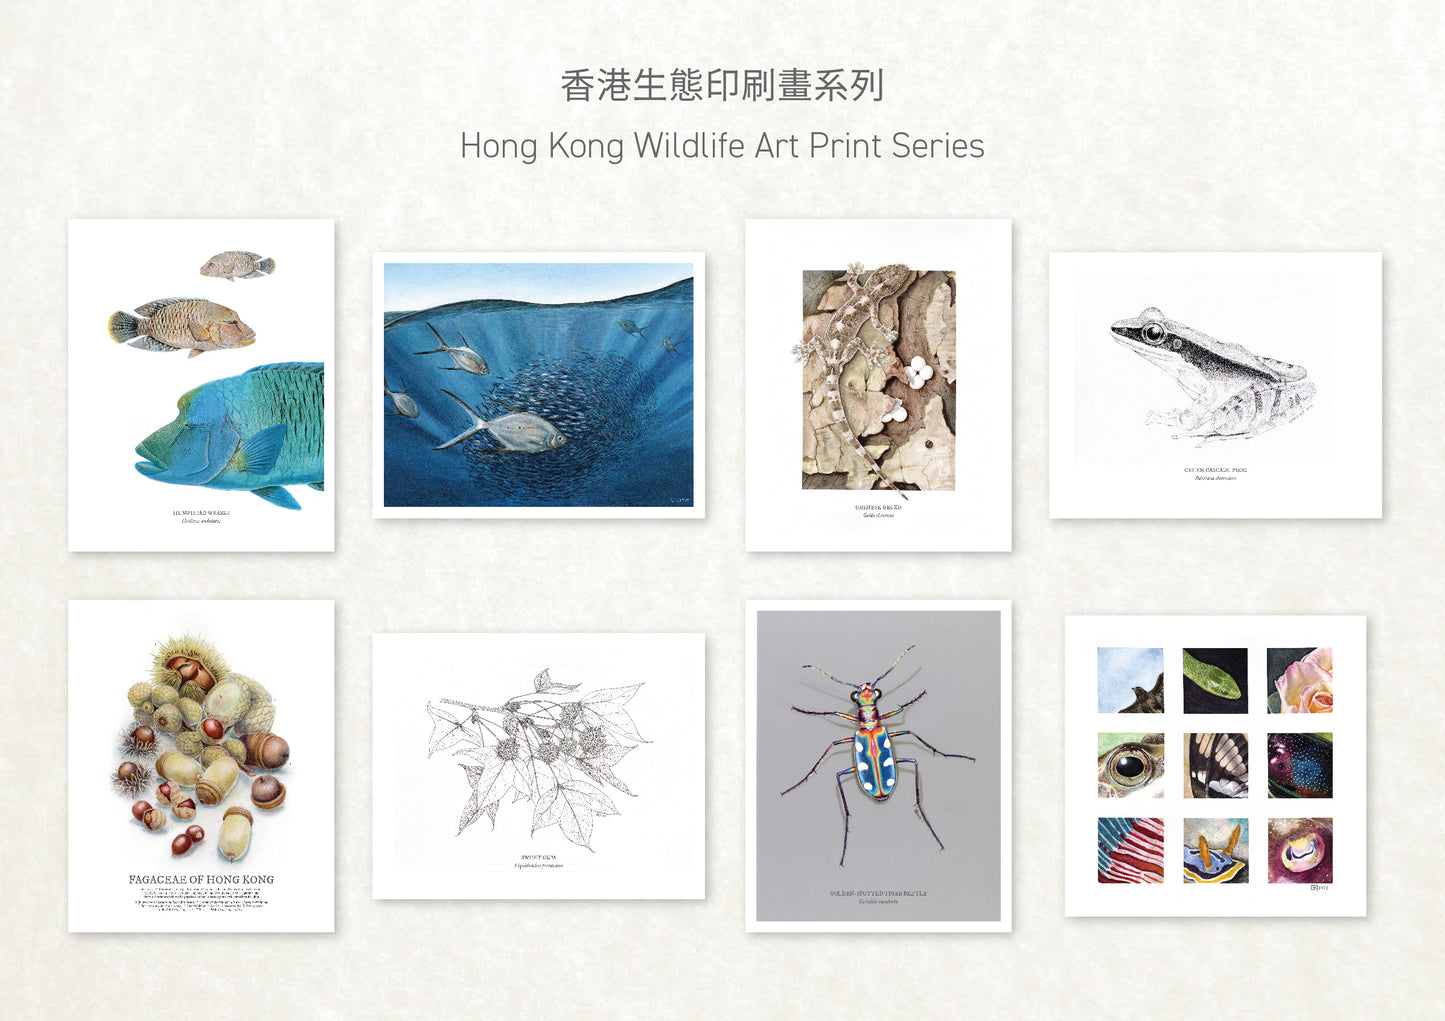 香港生態印刷畫: 壁虎 HK Wildlife Art Print: Chinese Gecko